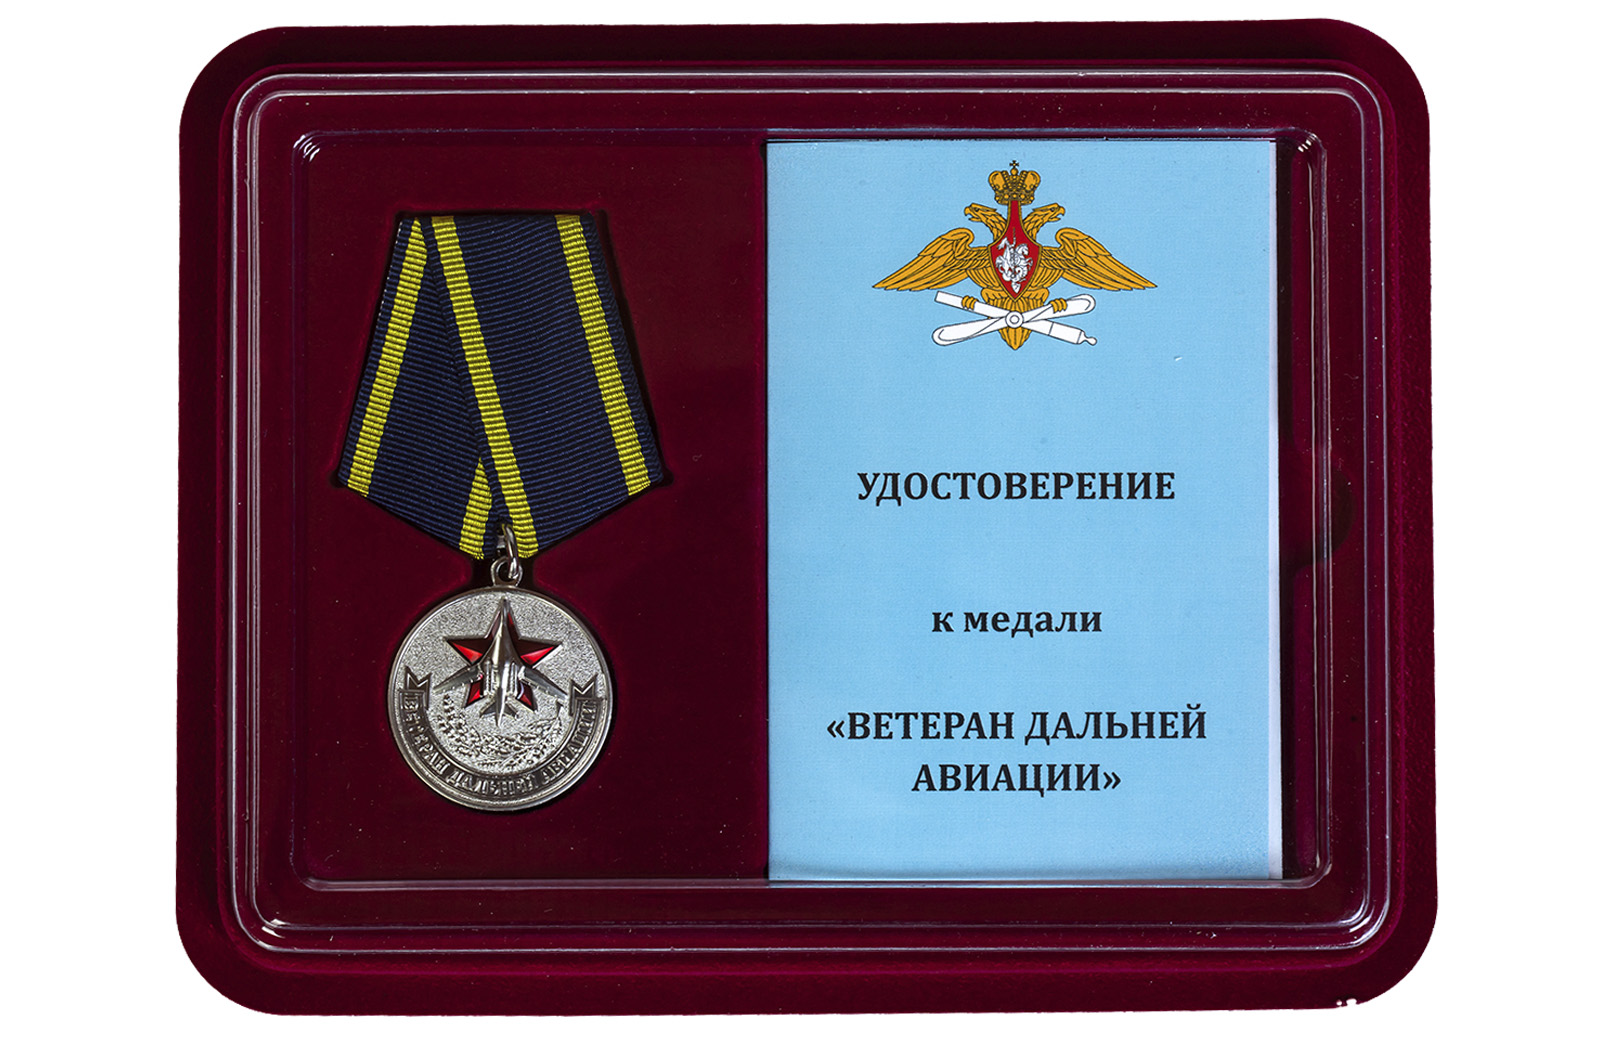 Медаль "Дальняя авиация" для ветеранов купить в Военпро